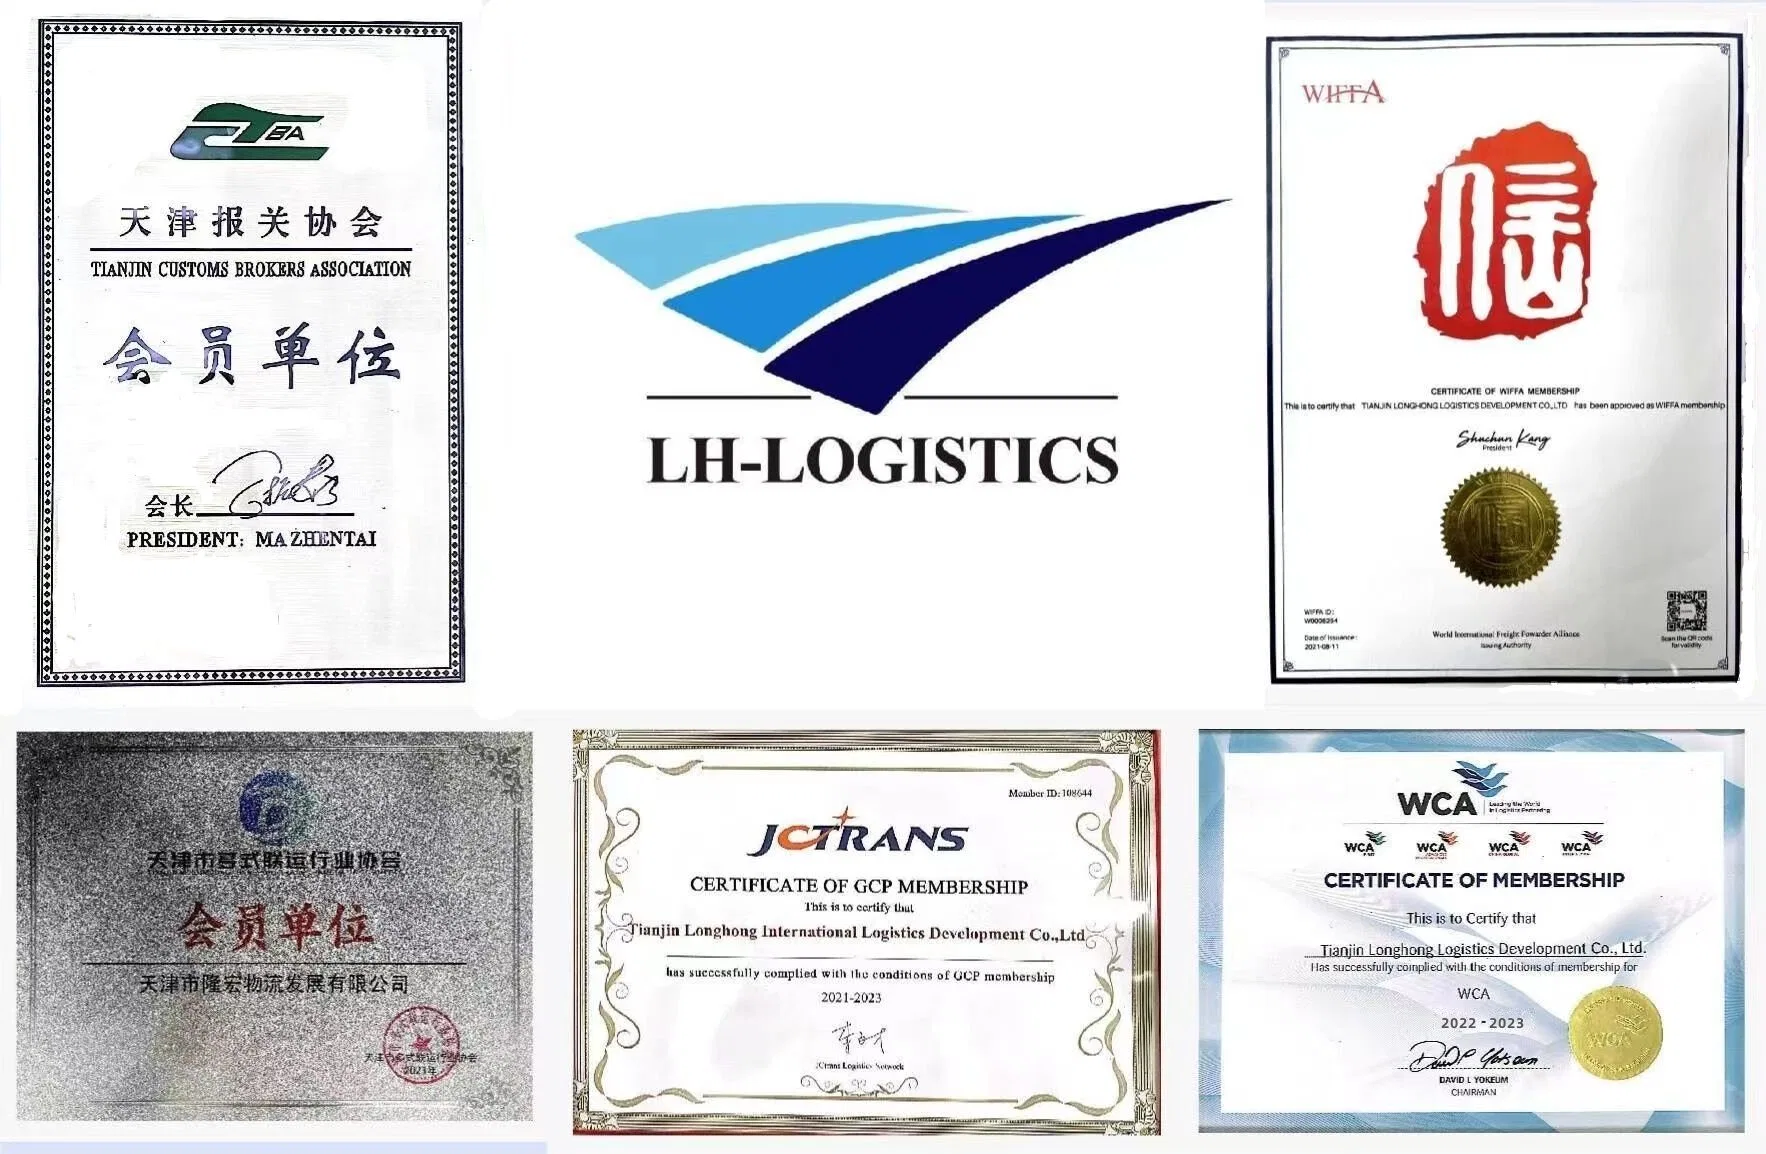 Serviços internacionais de Transporte Marítimo para Belrut no Líbano de Tianjin, Dalian, Qingdao, Ningbo na China